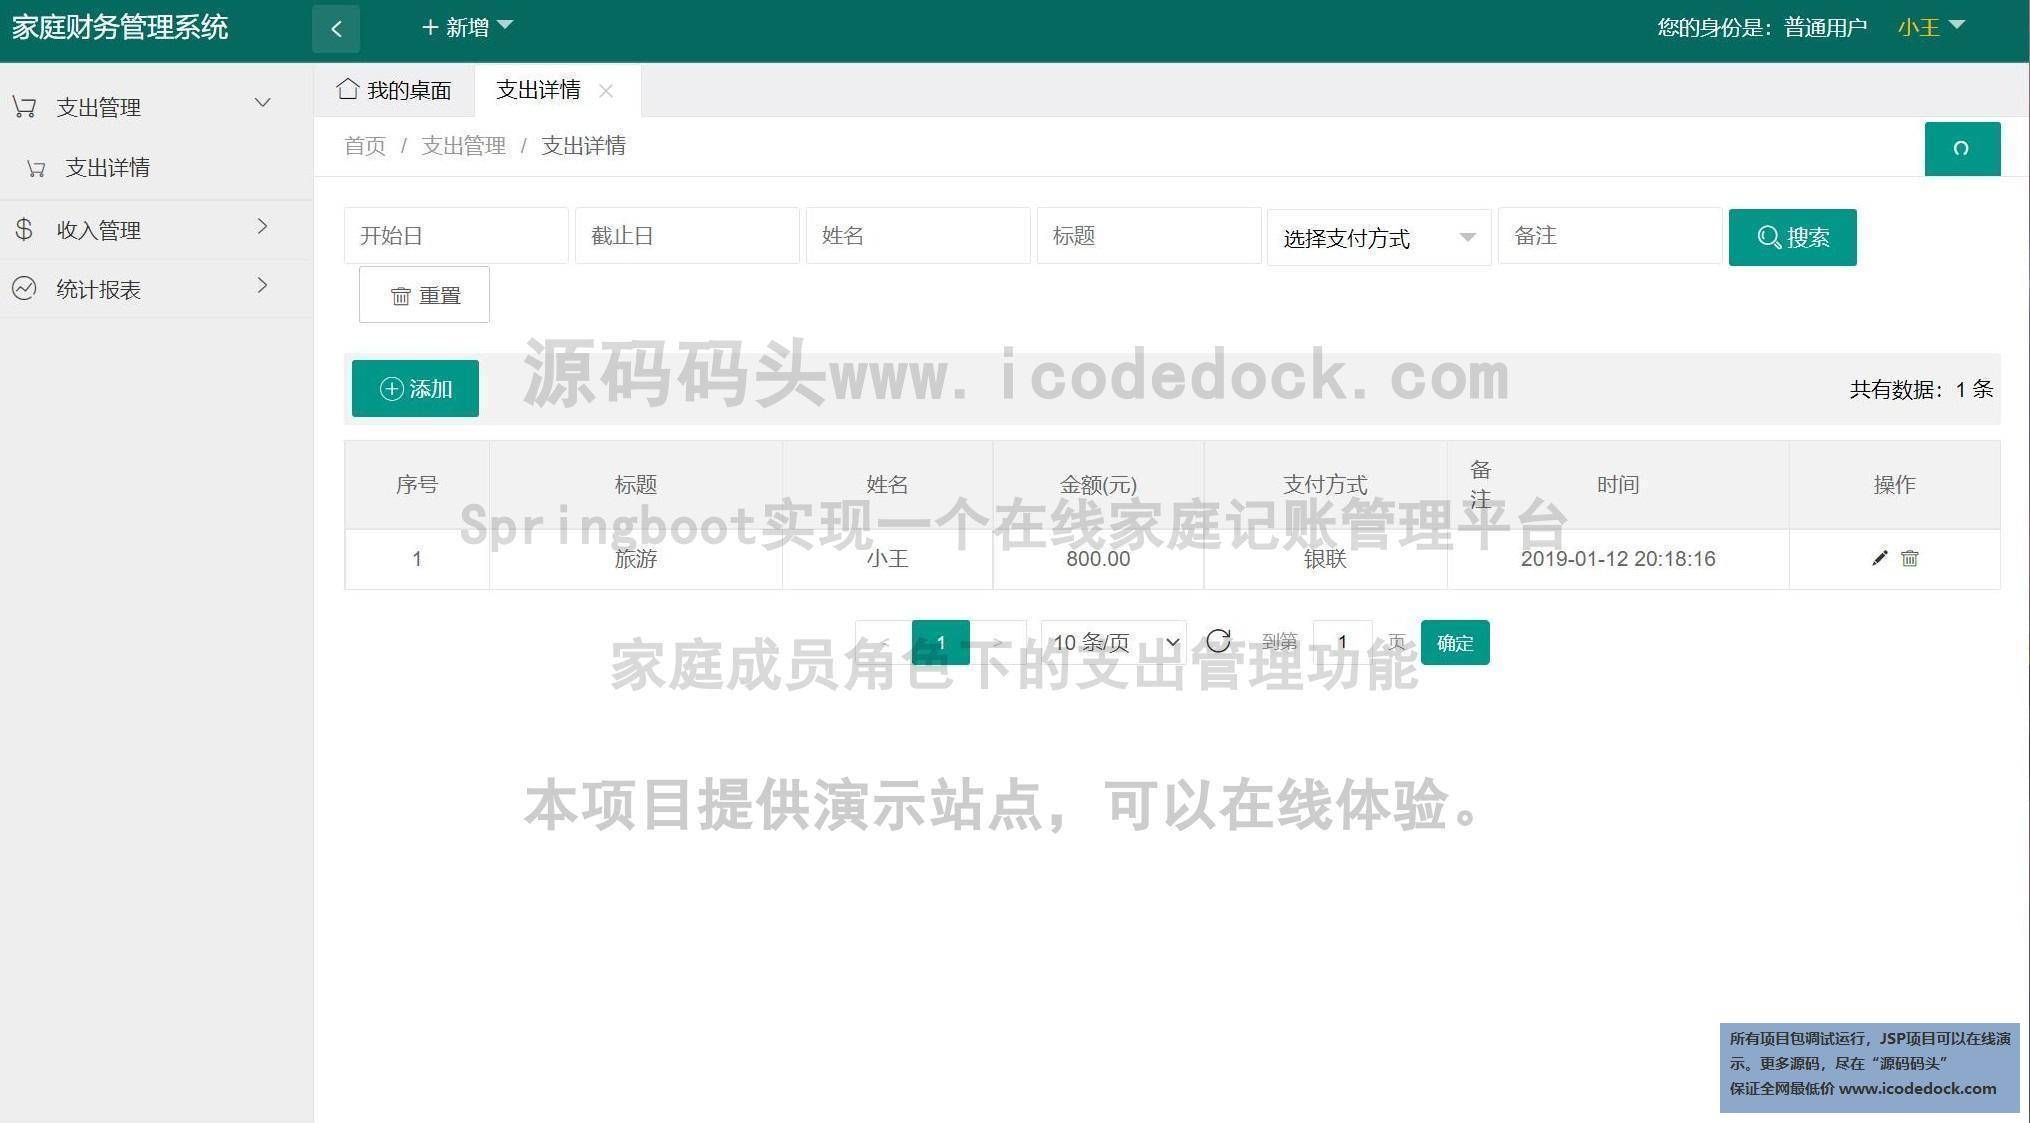 源码码头-Springboot实现一个在线家庭记账管理平台-家庭成员角色-支出管理